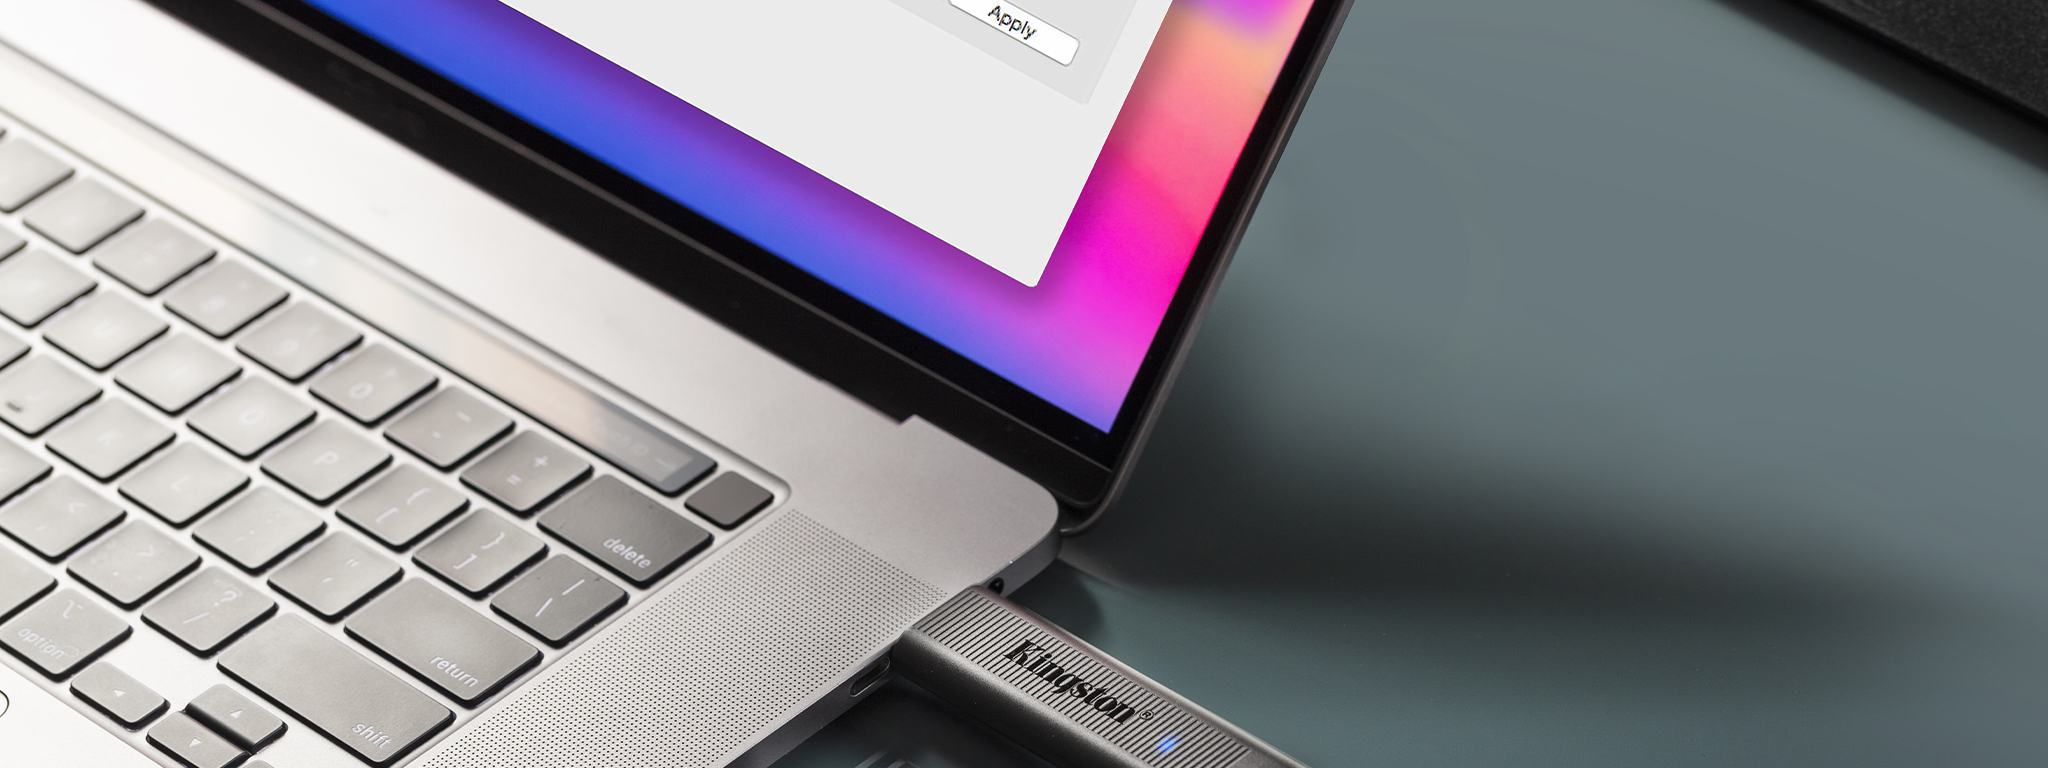 2 pamięci USB DataTraveler Max – jedna podłączona do laptopa, a druga obok niego na biurku